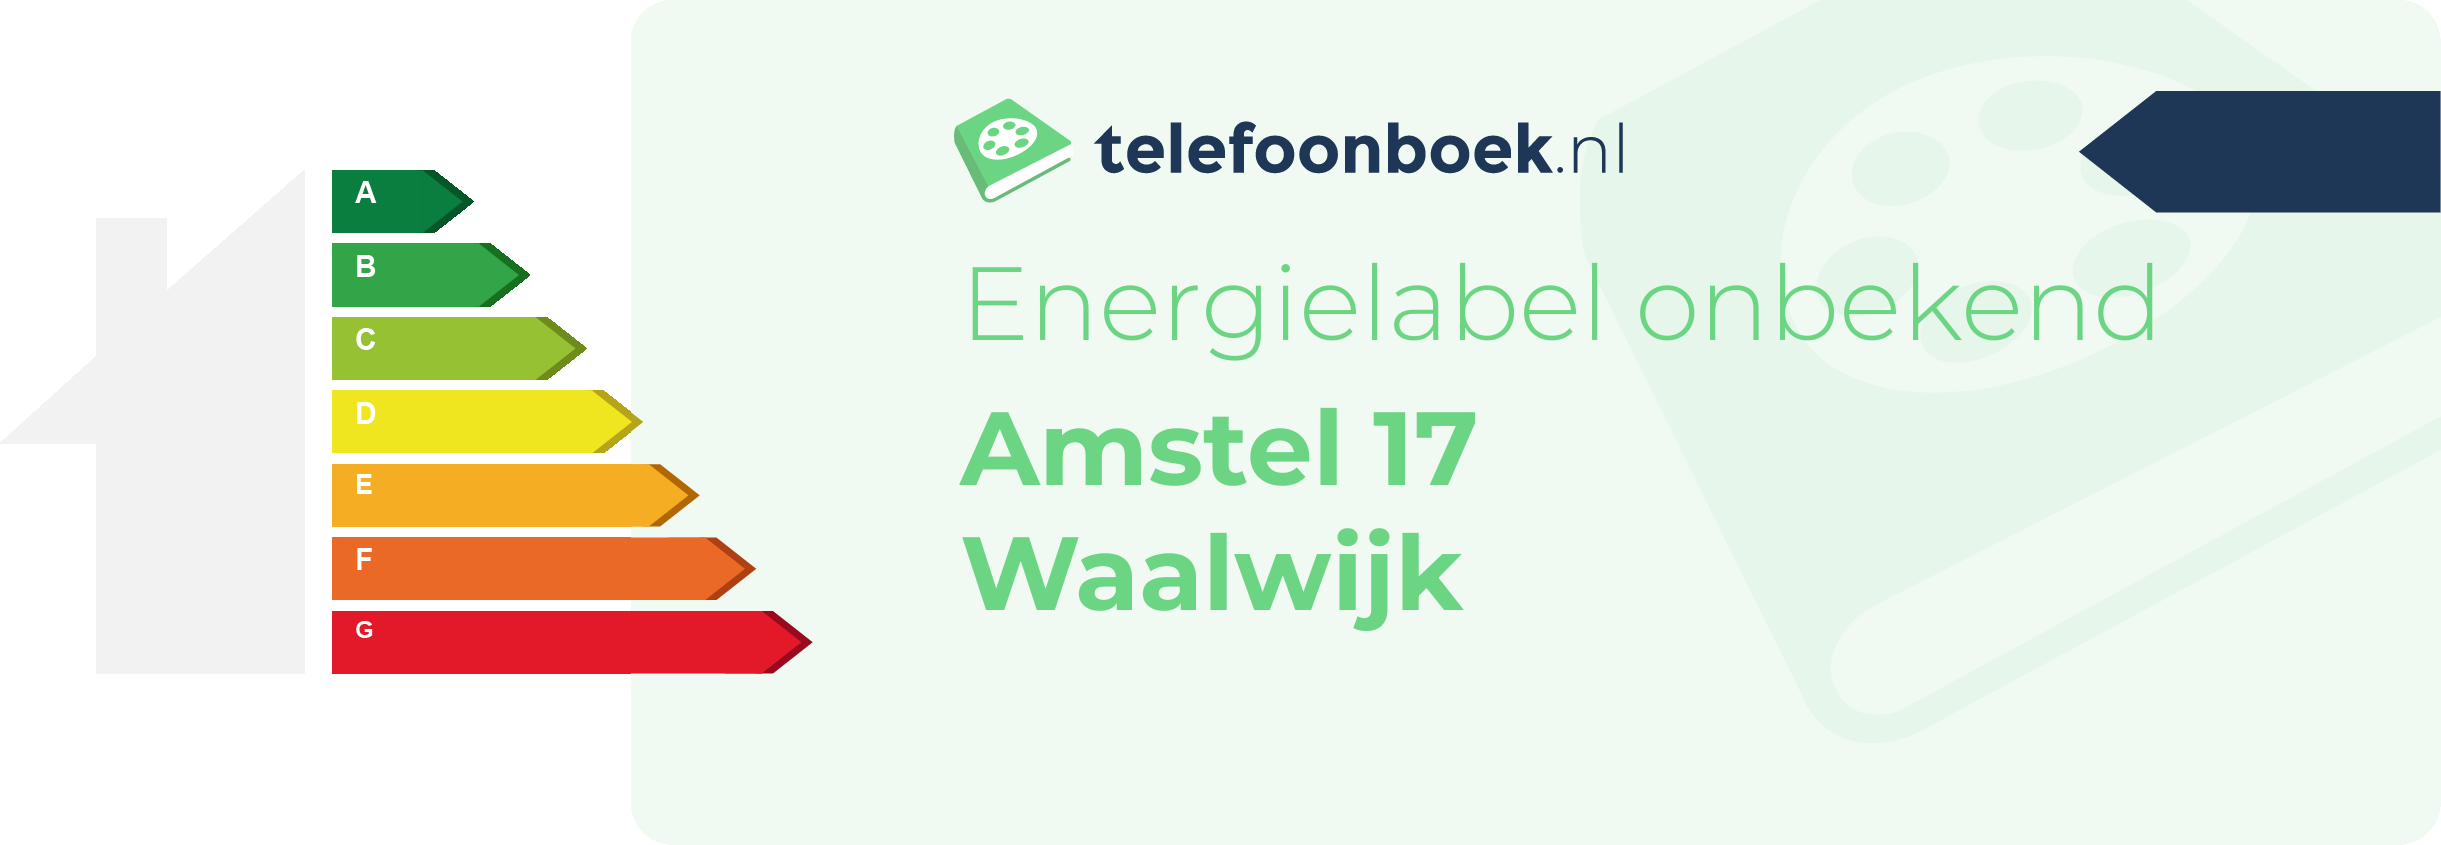 Energielabel Amstel 17 Waalwijk